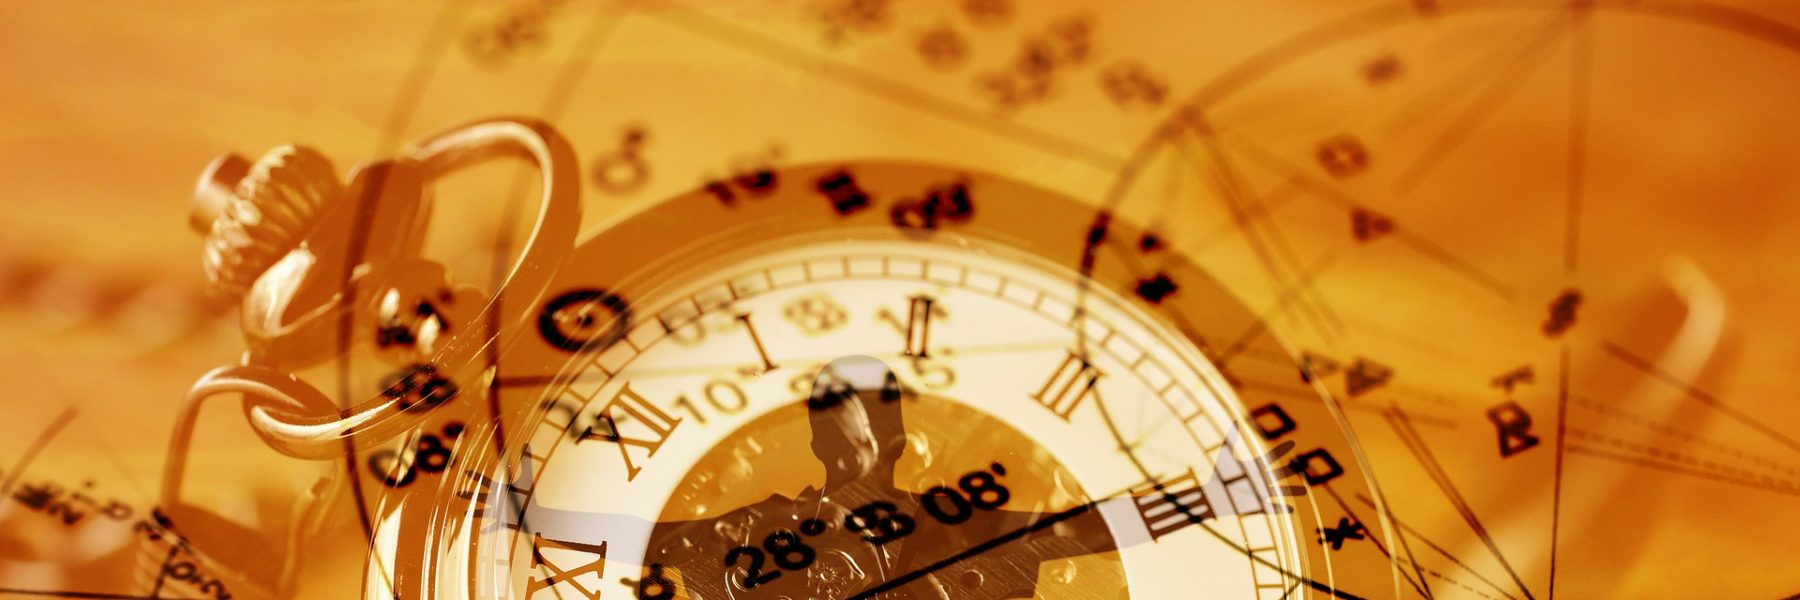 Horloge astrologie